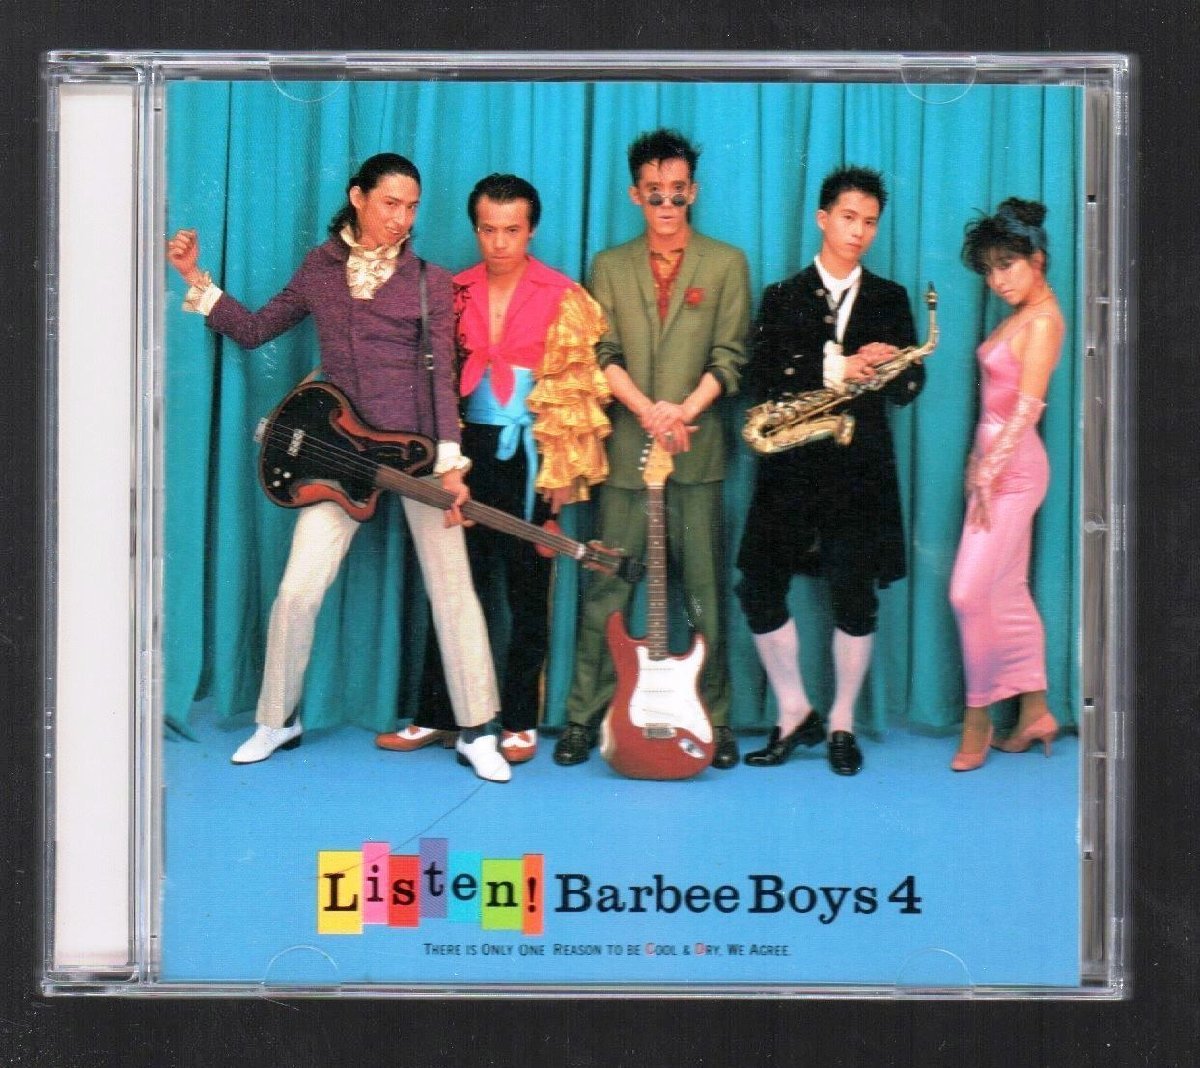 ■バービーボーイズ(BARBEE BOYS)■名盤(CD)■「Listen!」■BARBEE BOYS 4■♪女ぎつねon the Run♪■32・8H-134■1987/9/9発売■廃盤■_画像1